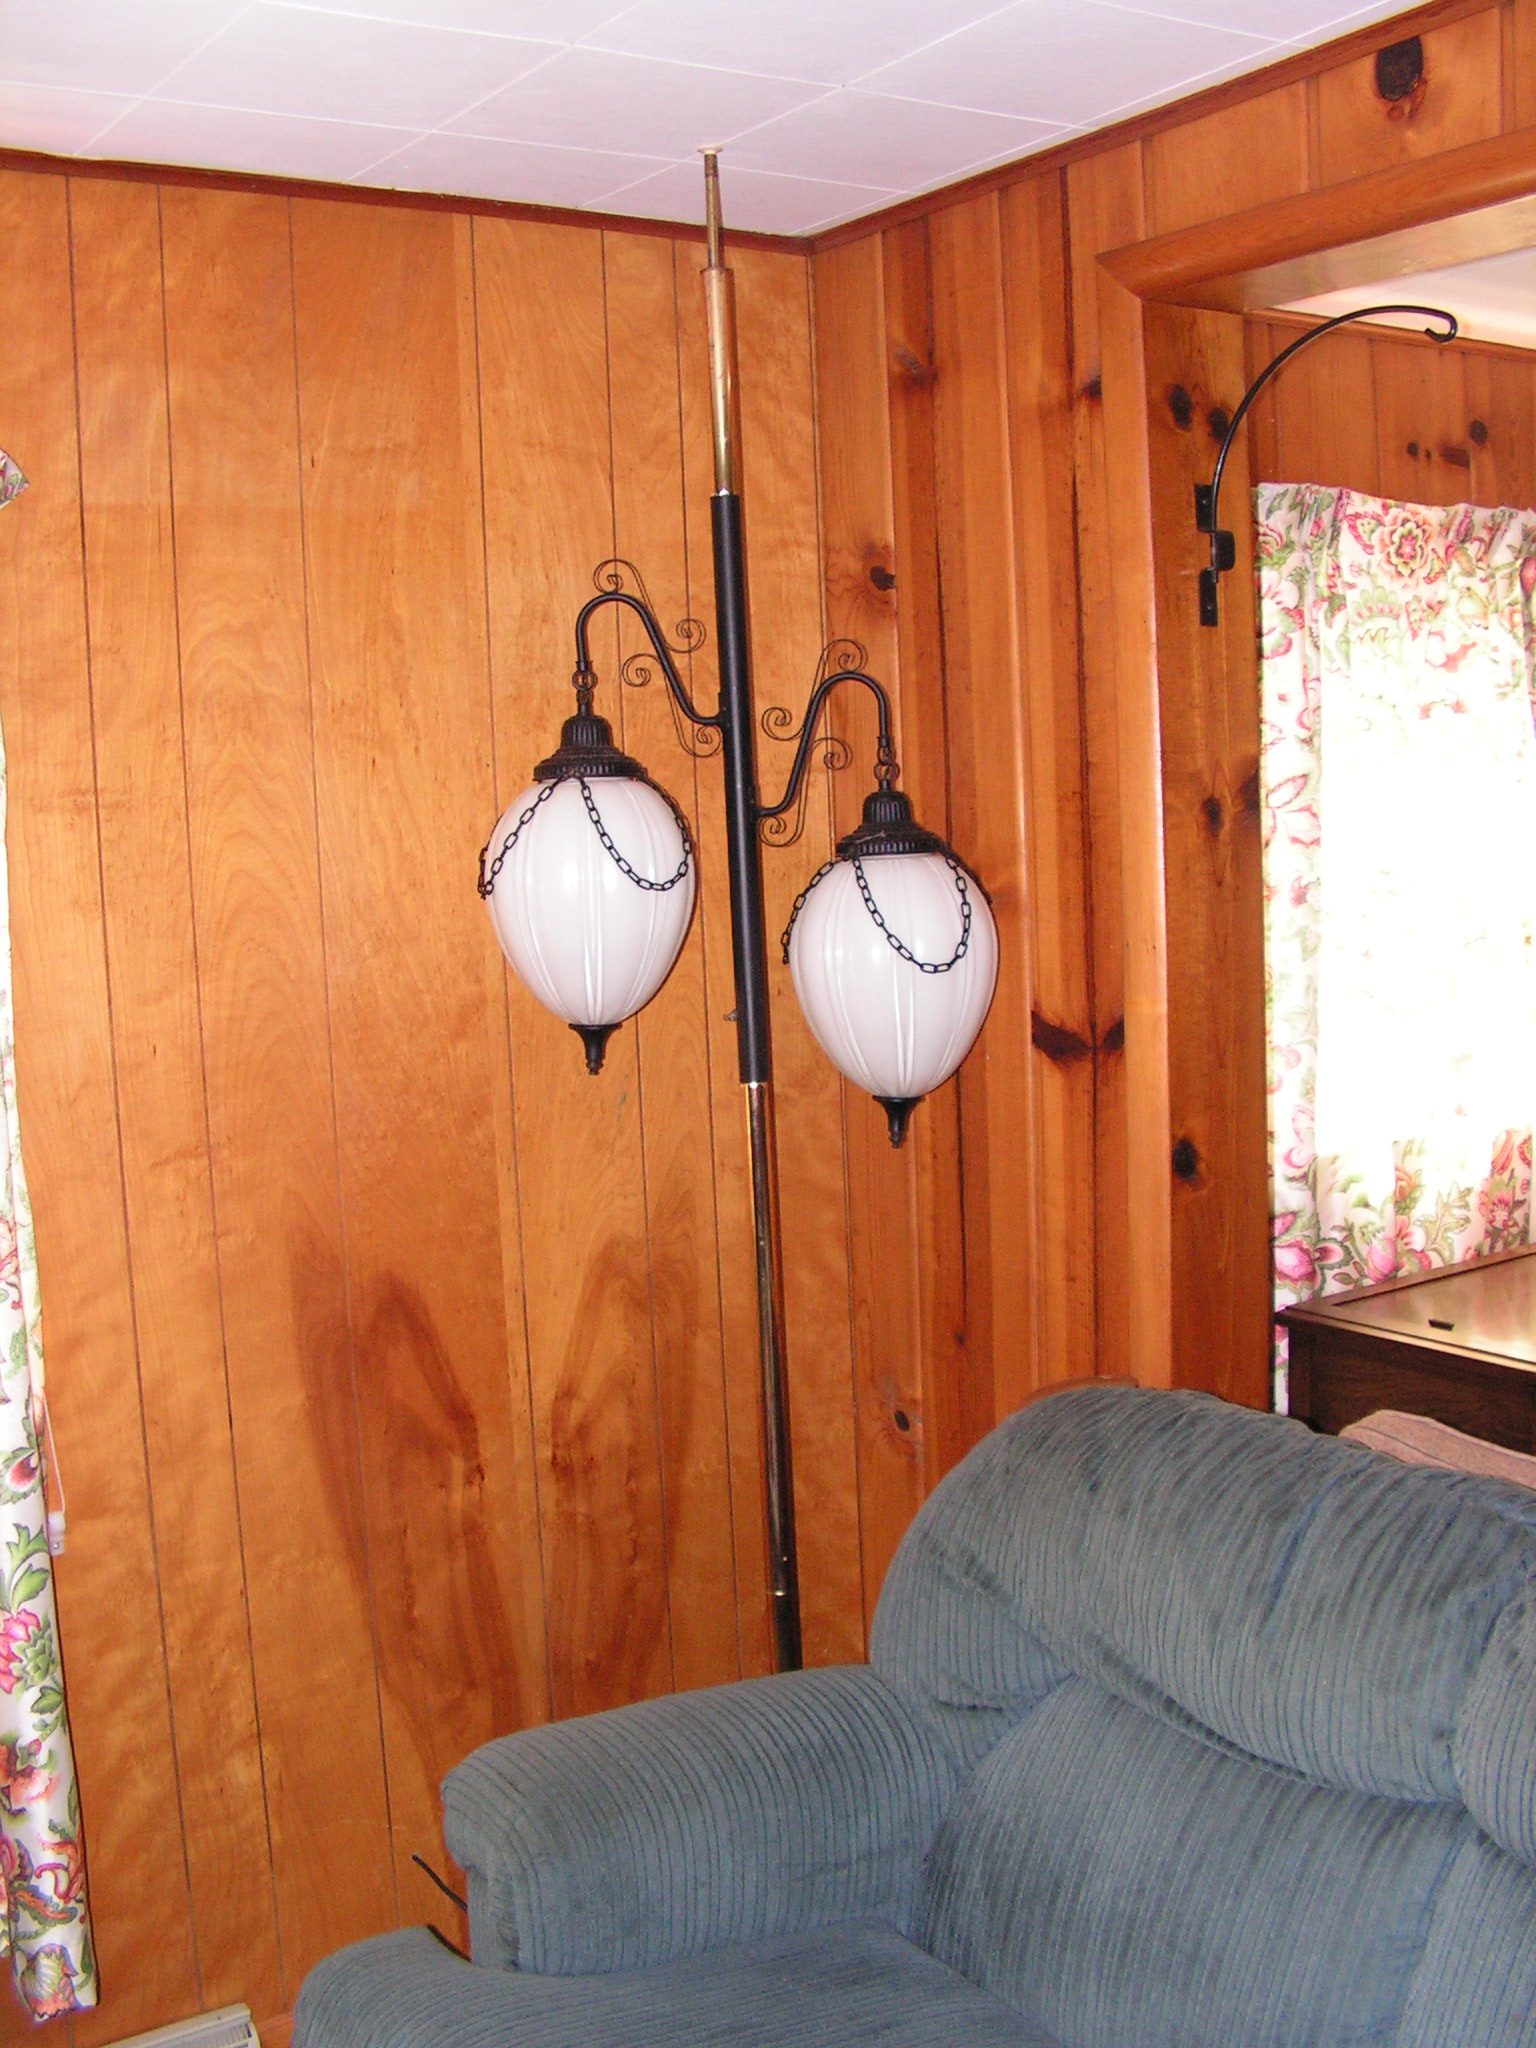 2 light Pole Lamp